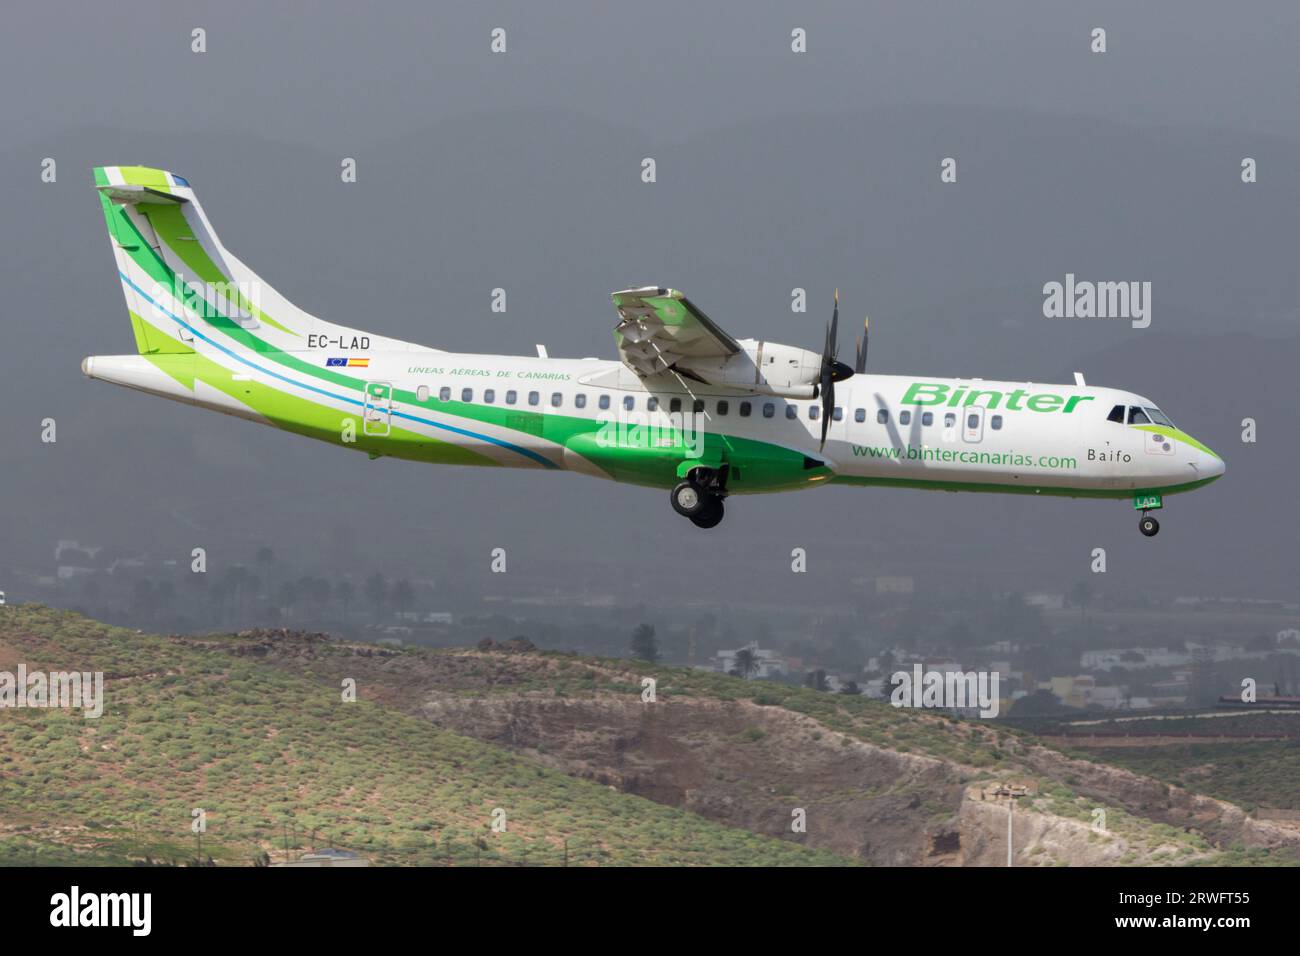 Avión turbo hélice ATR72 de la aerolínea Binter Canarias Stock Photo